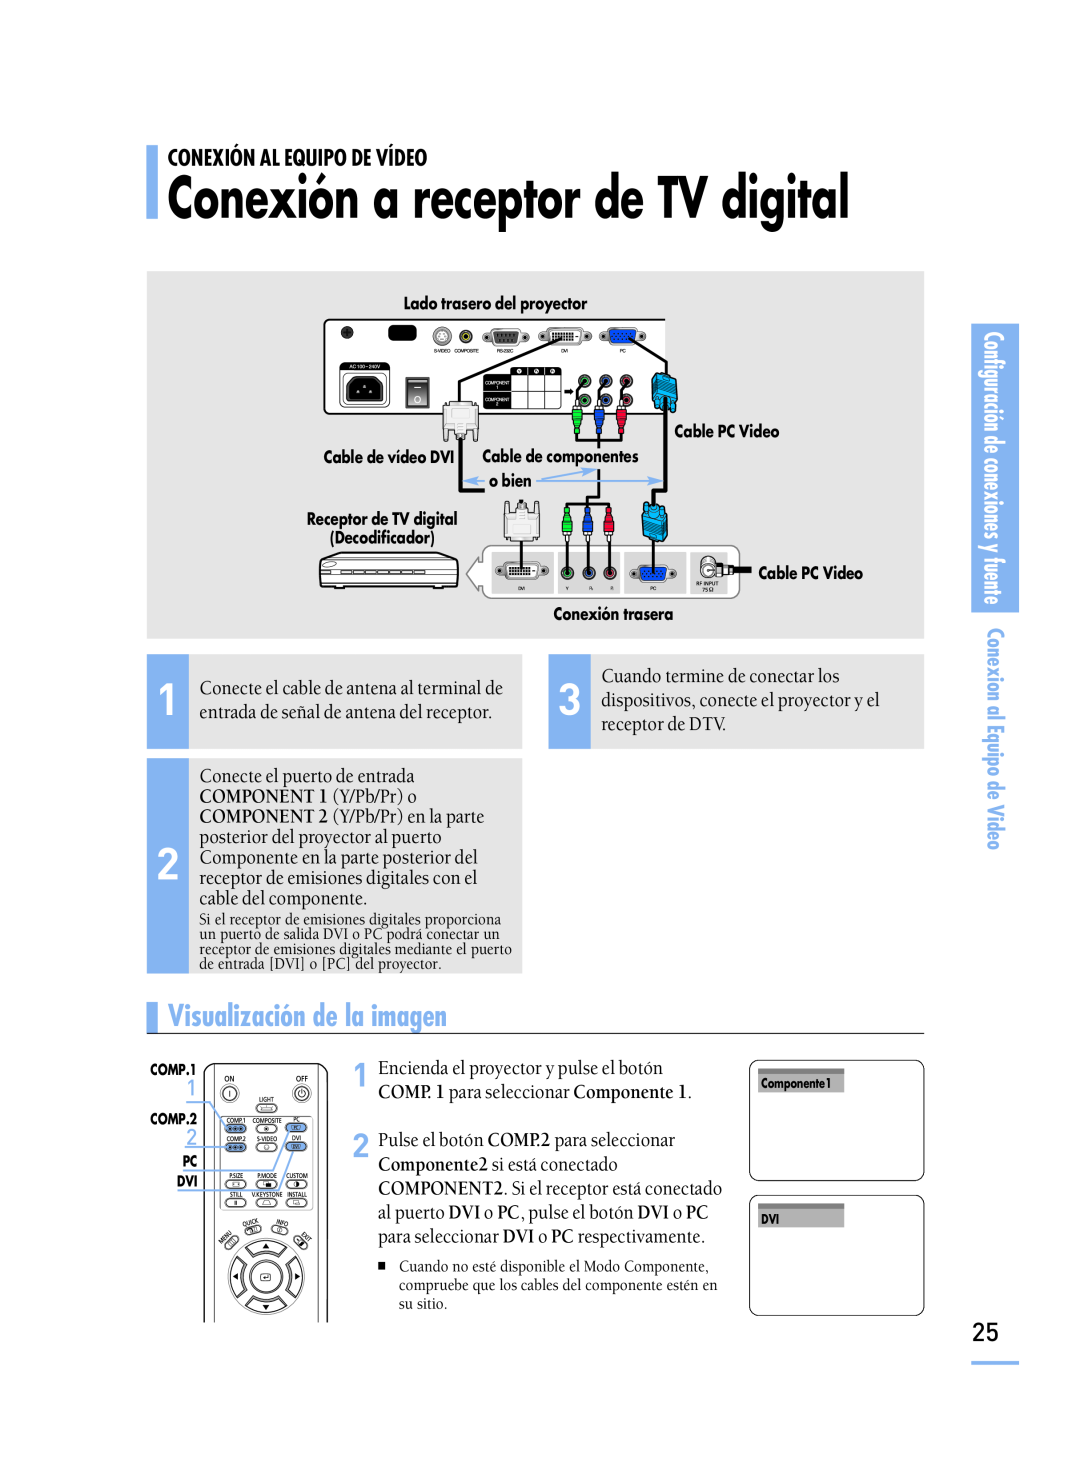 Samsung SPH800BEMX/EDC Conexión a receptor de TV digital, cable del componente, Pulse el botón COMP.2 para seleccionar 